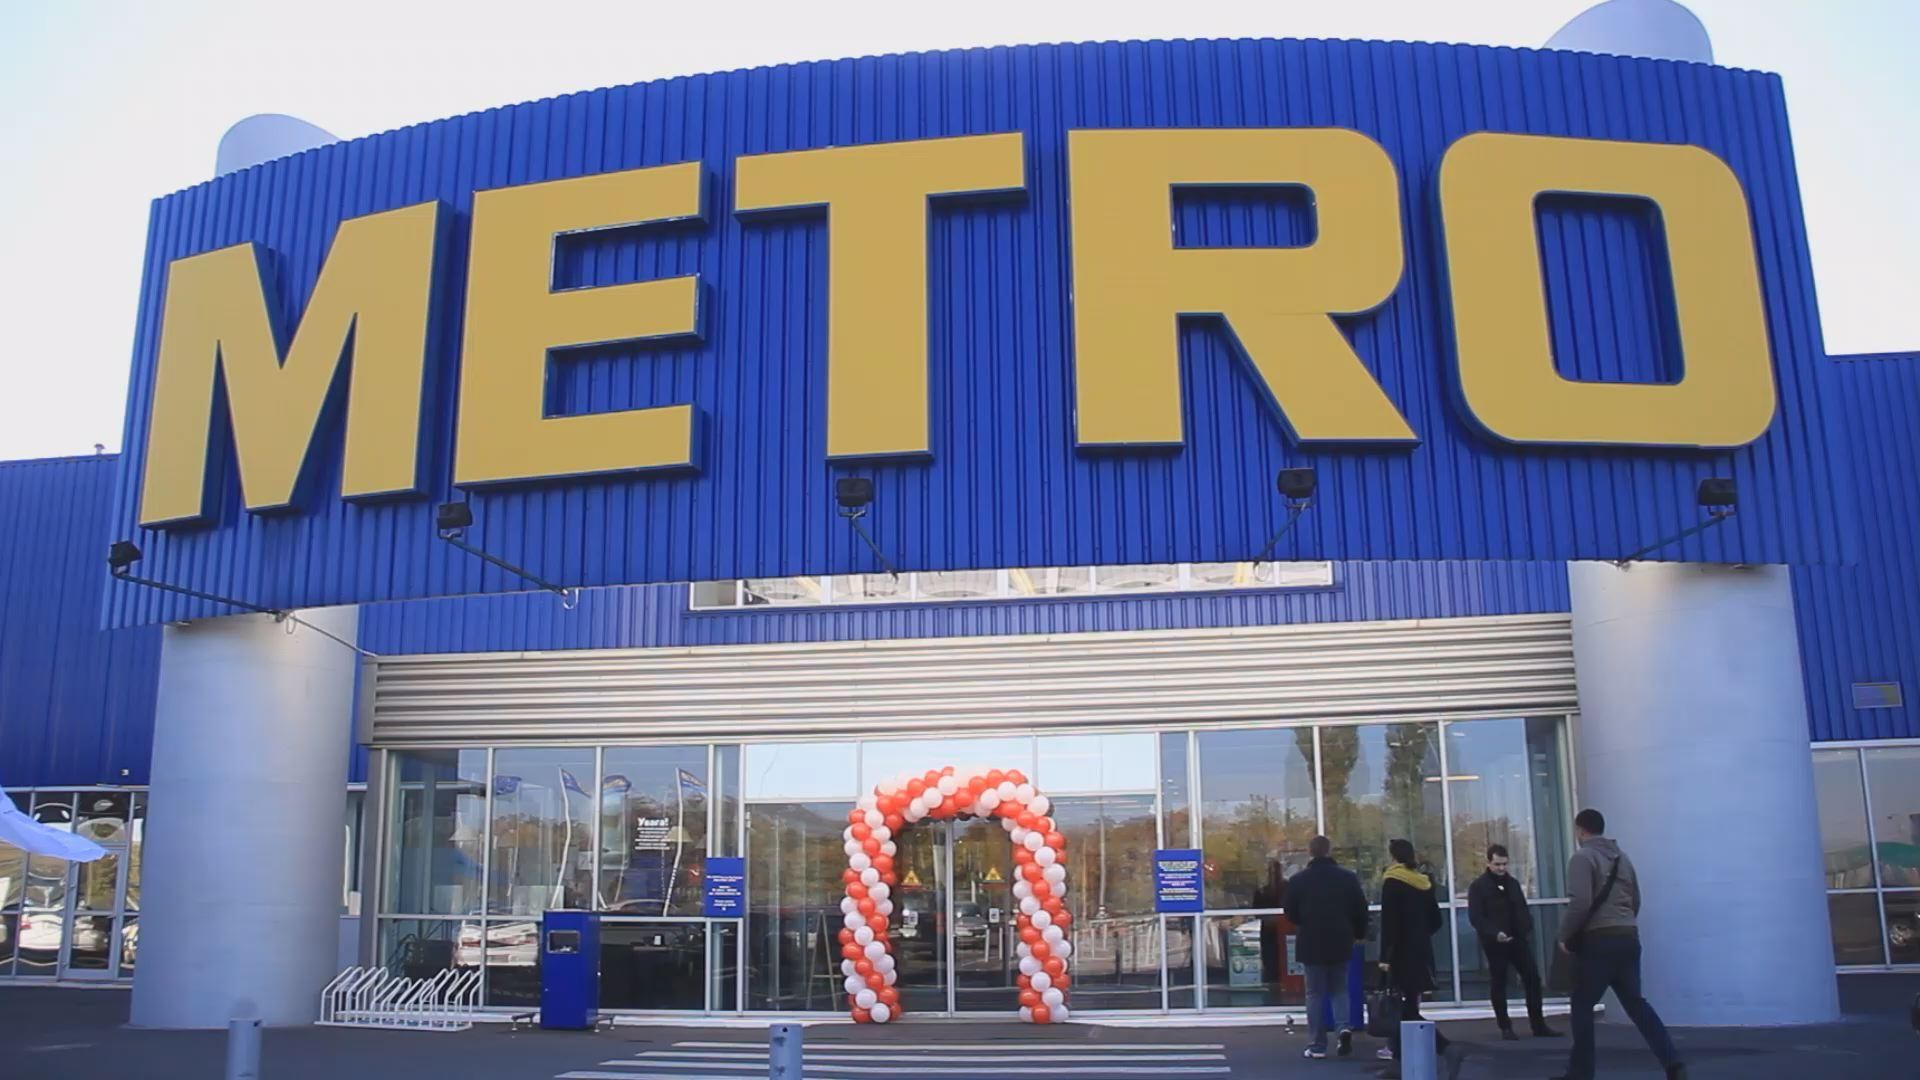 В семи торговых центрах Украины открылись концептуальные магазины одежды "METRO шкаф"